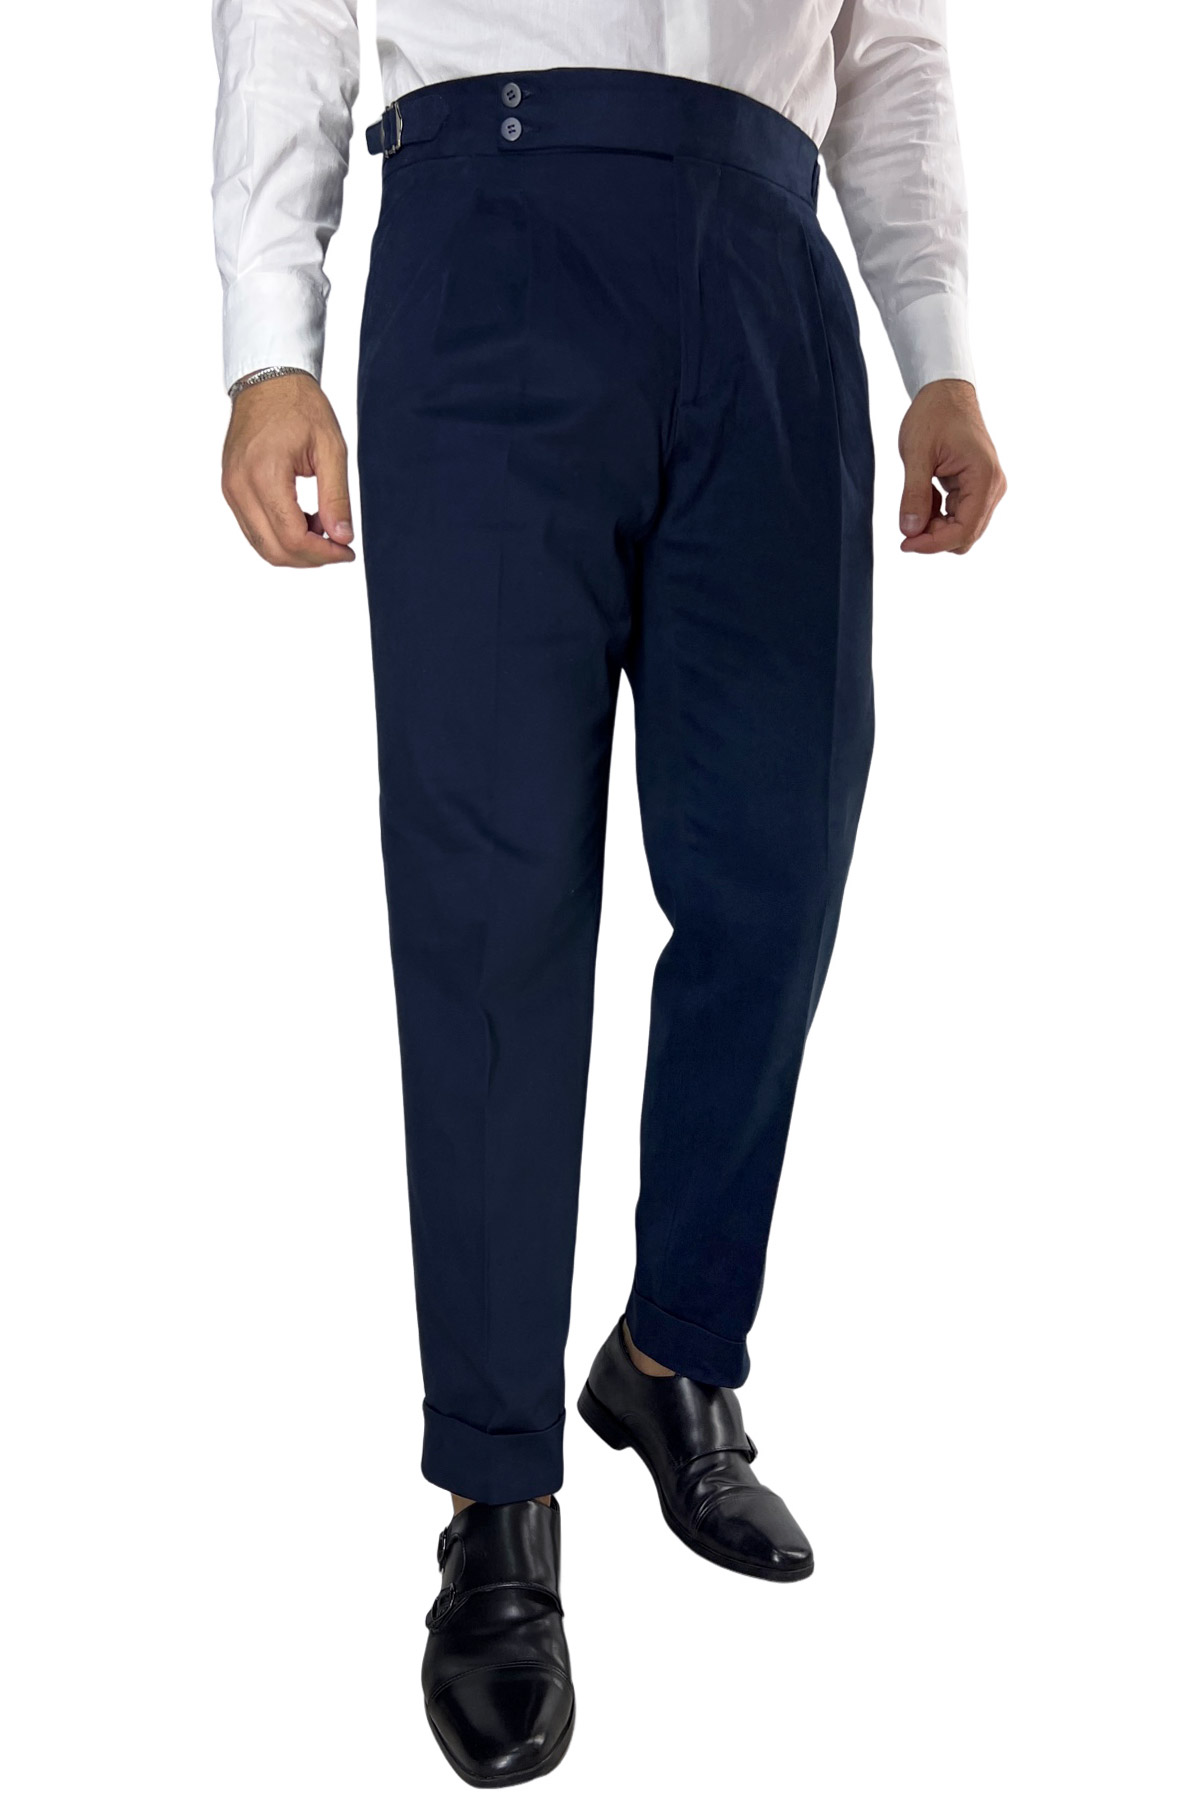 Pantalone uomo navy blu vita alta tasca america in cotone con doppia pinces e fibbie laterali